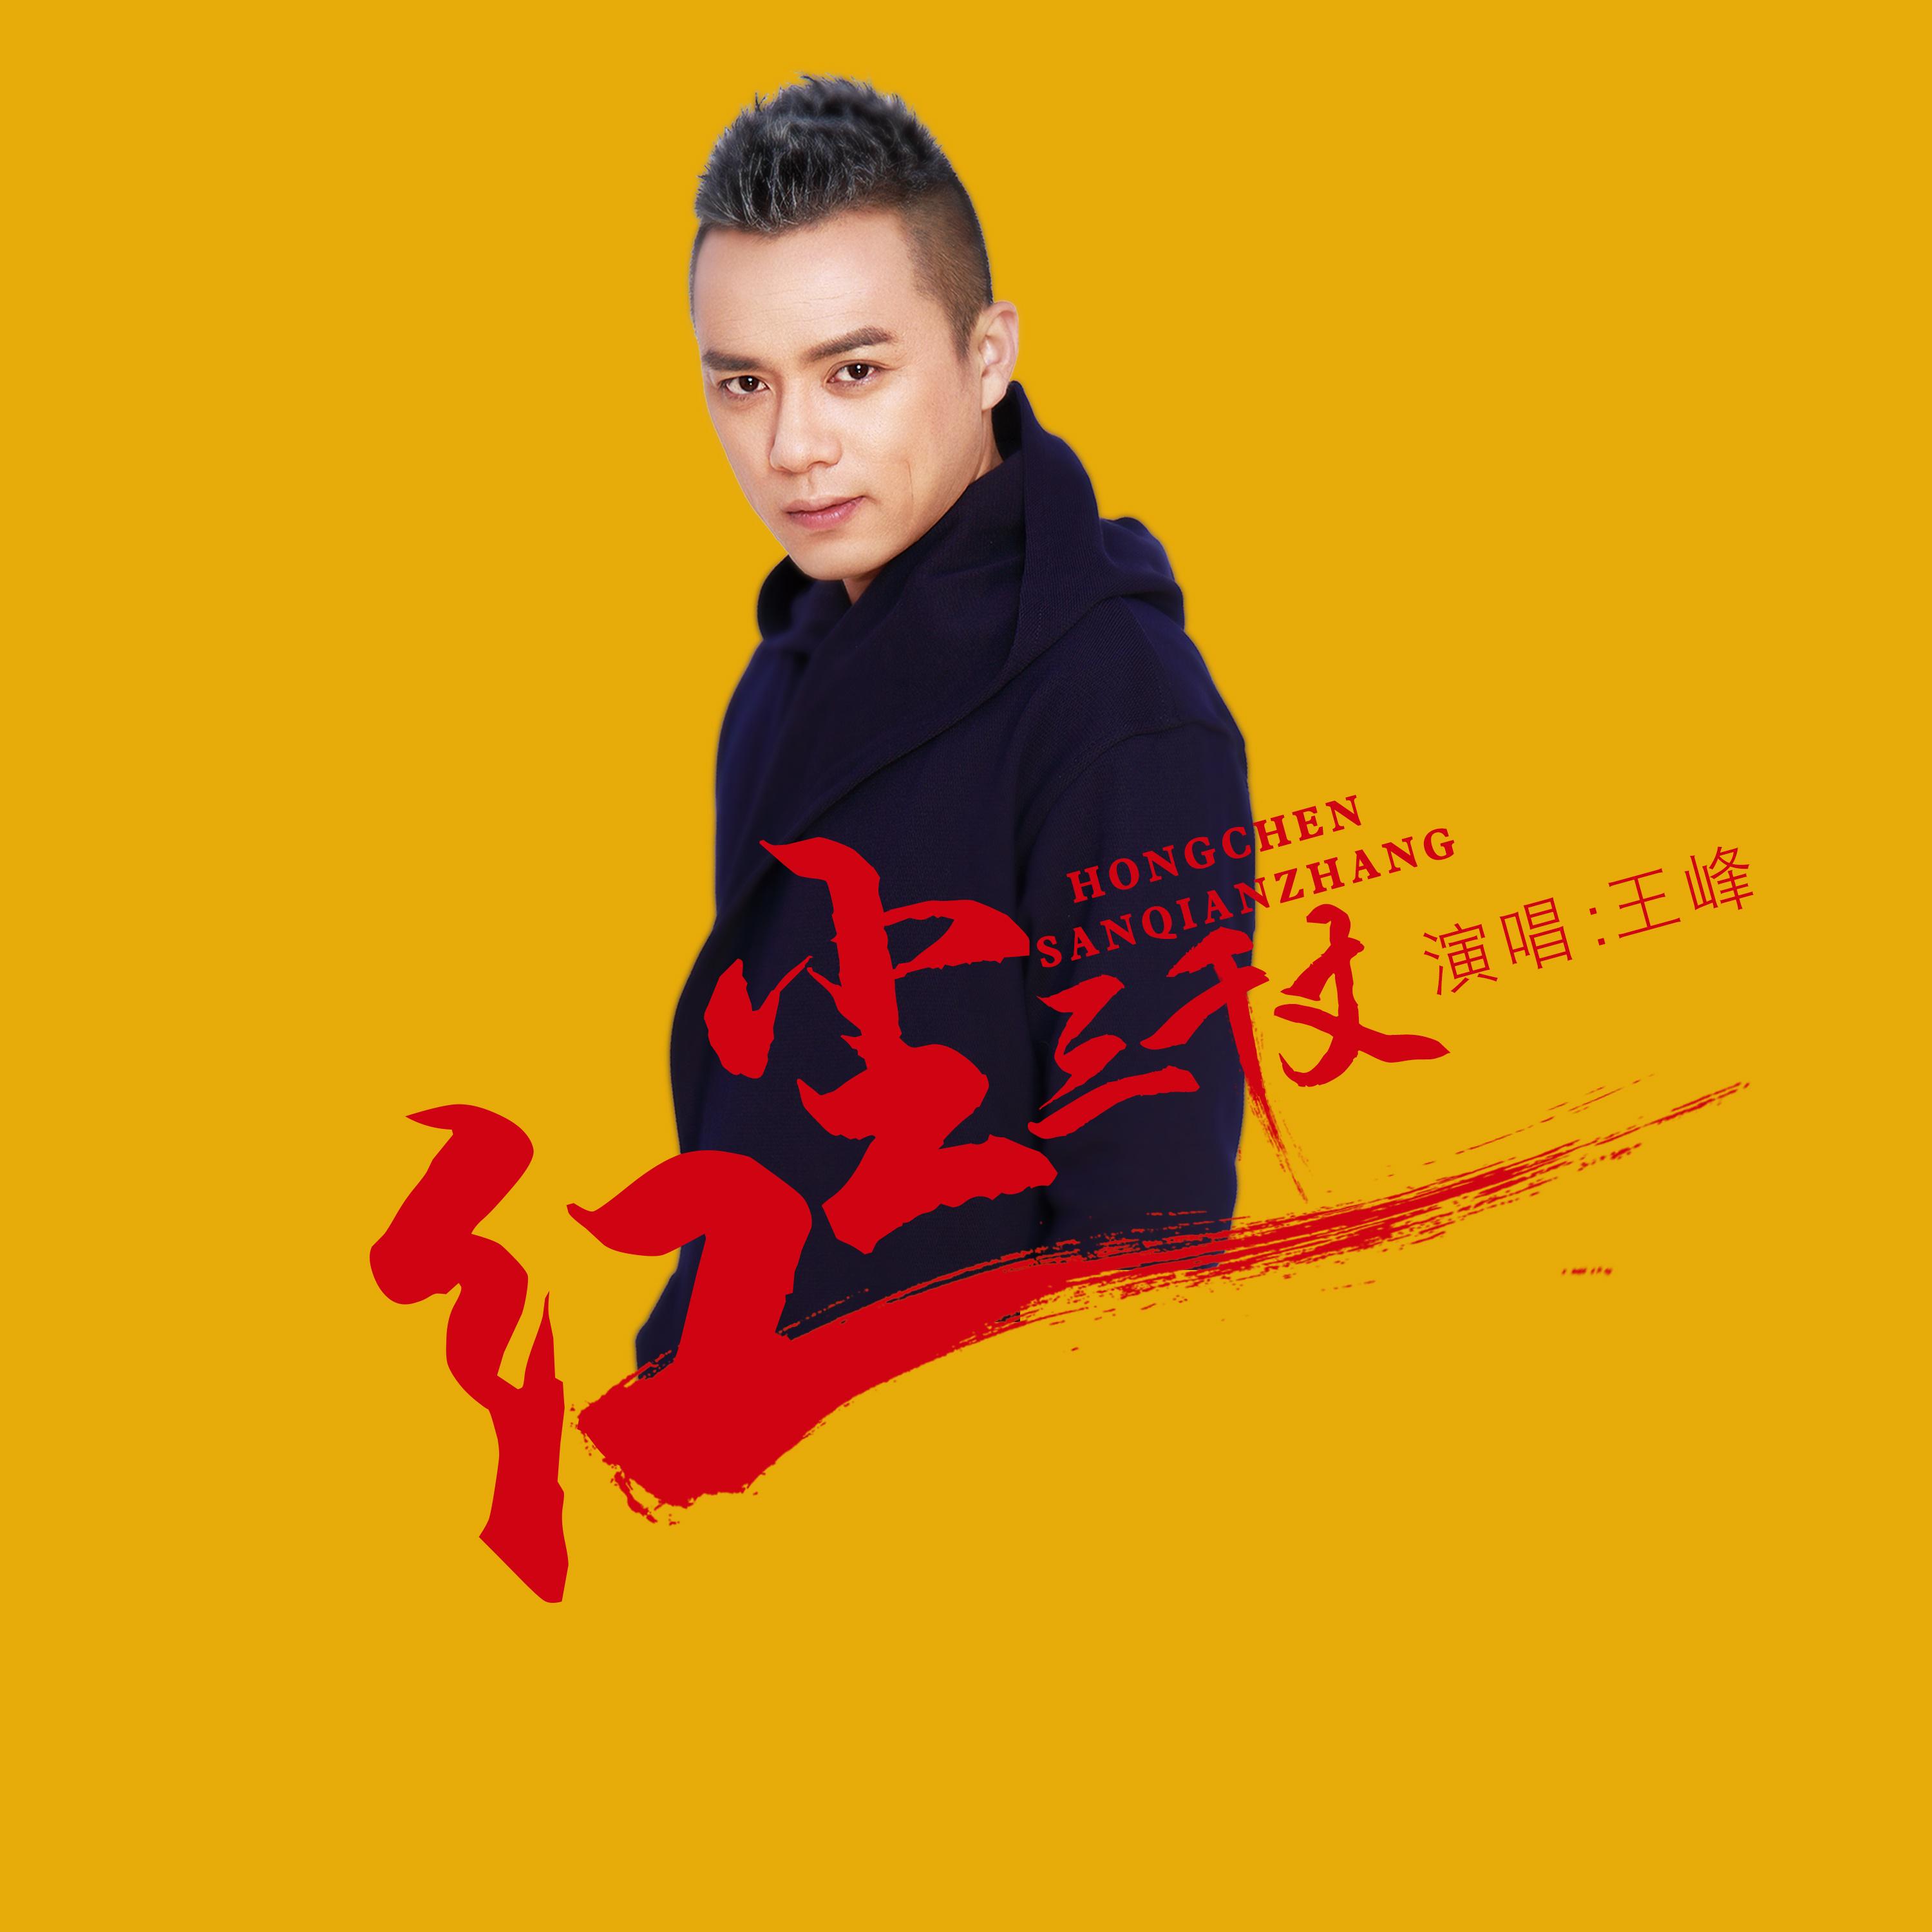 红尘三千丈 (伴奏) - 王峰 - 单曲 - 网易云音乐